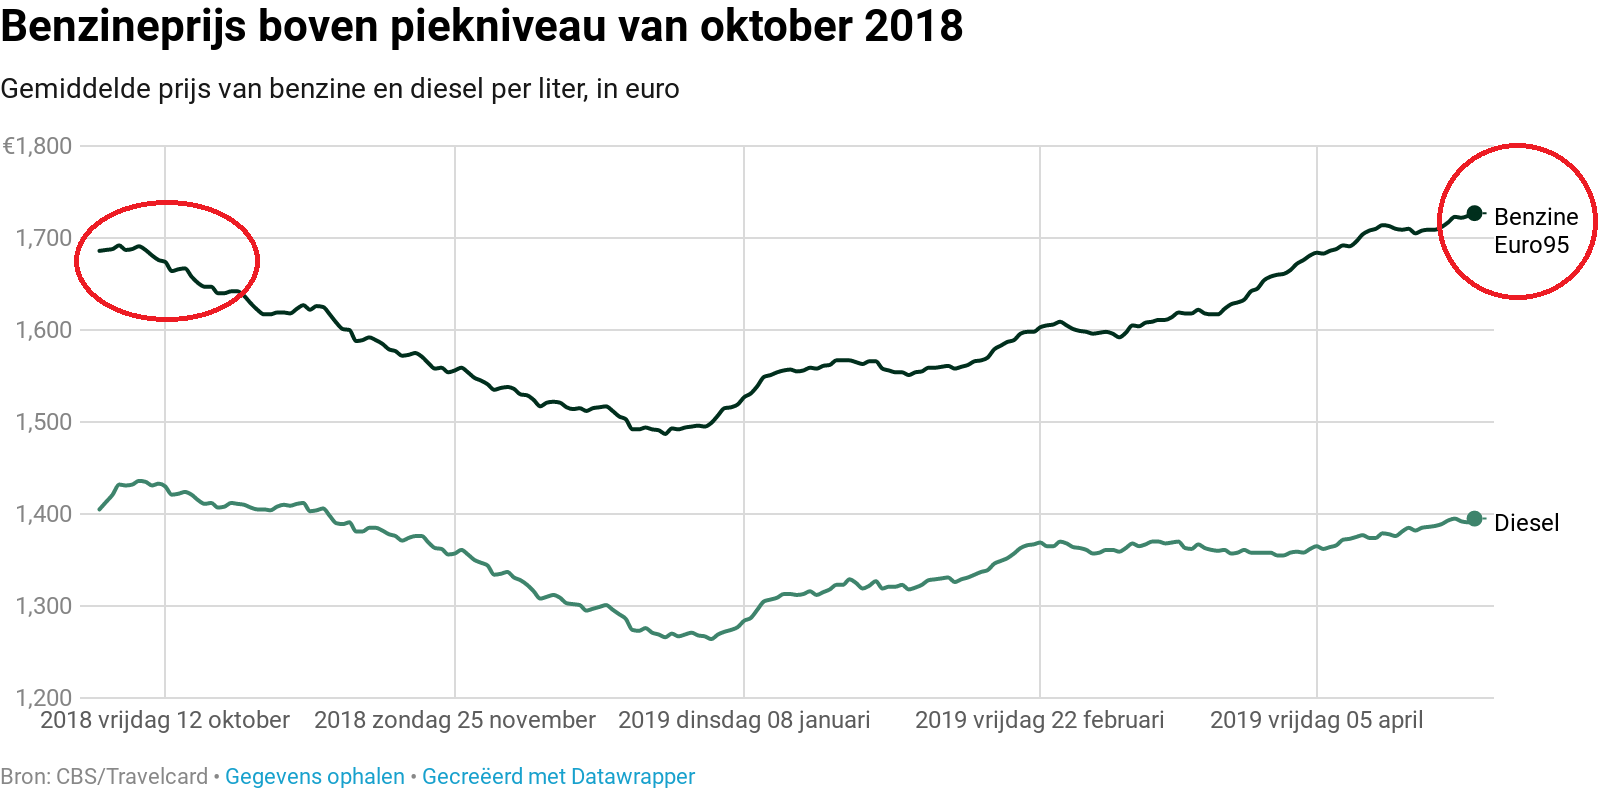 Hoewel benzineprijzen dit patroon min of meer volgden, valt op dat benzineprijzen sinds enkele weken op recordniveaus staan, terwijl de olieprijs nog onder de piek van oktober 2018 zit.